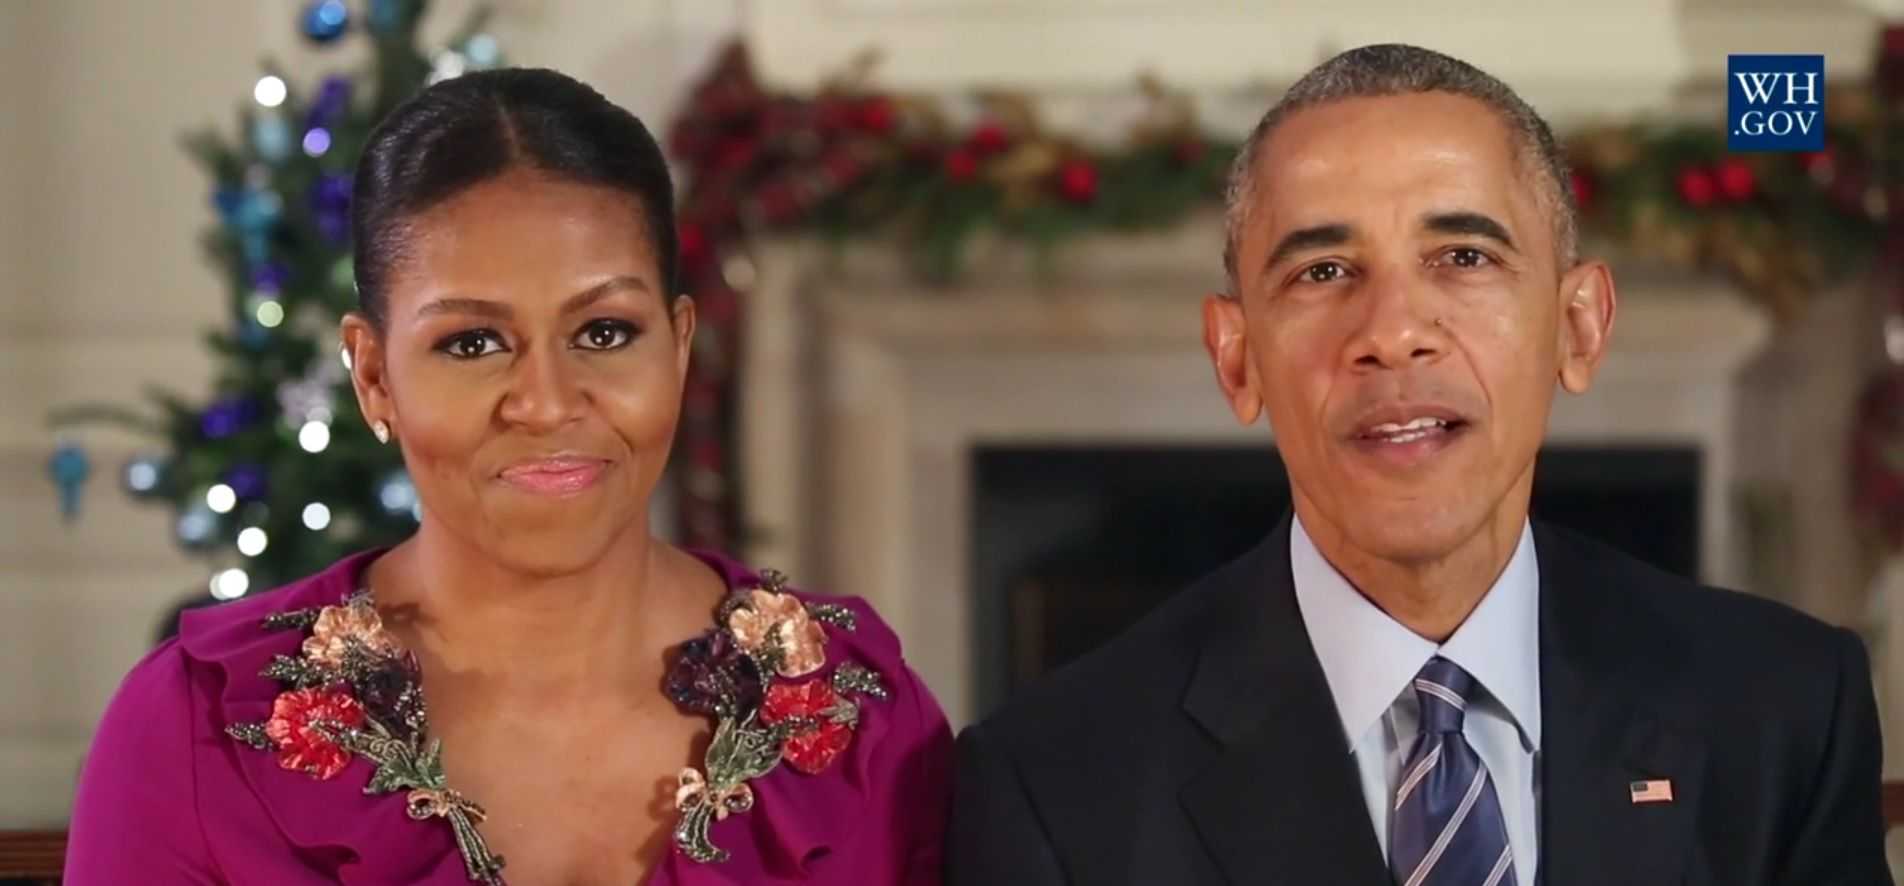 Los Obama hacen balance de estos ocho años con humor en la última felicitación de Navidad